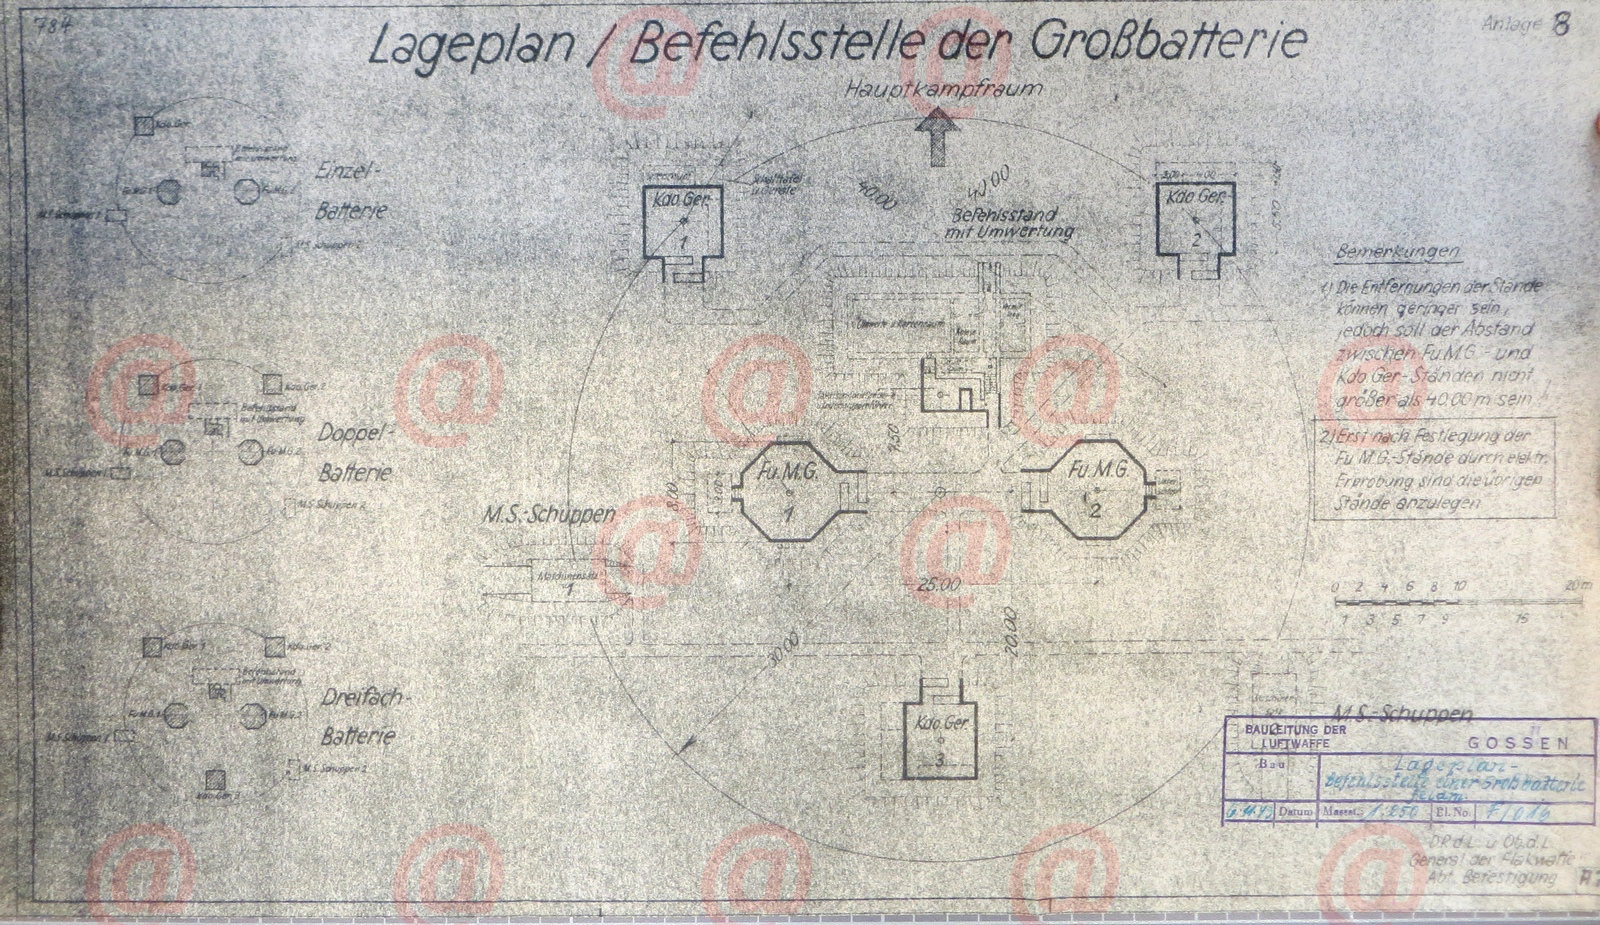 Lageplan - feldmessig Befehlsstelle einer Grossbatterie (Gossen).jpg